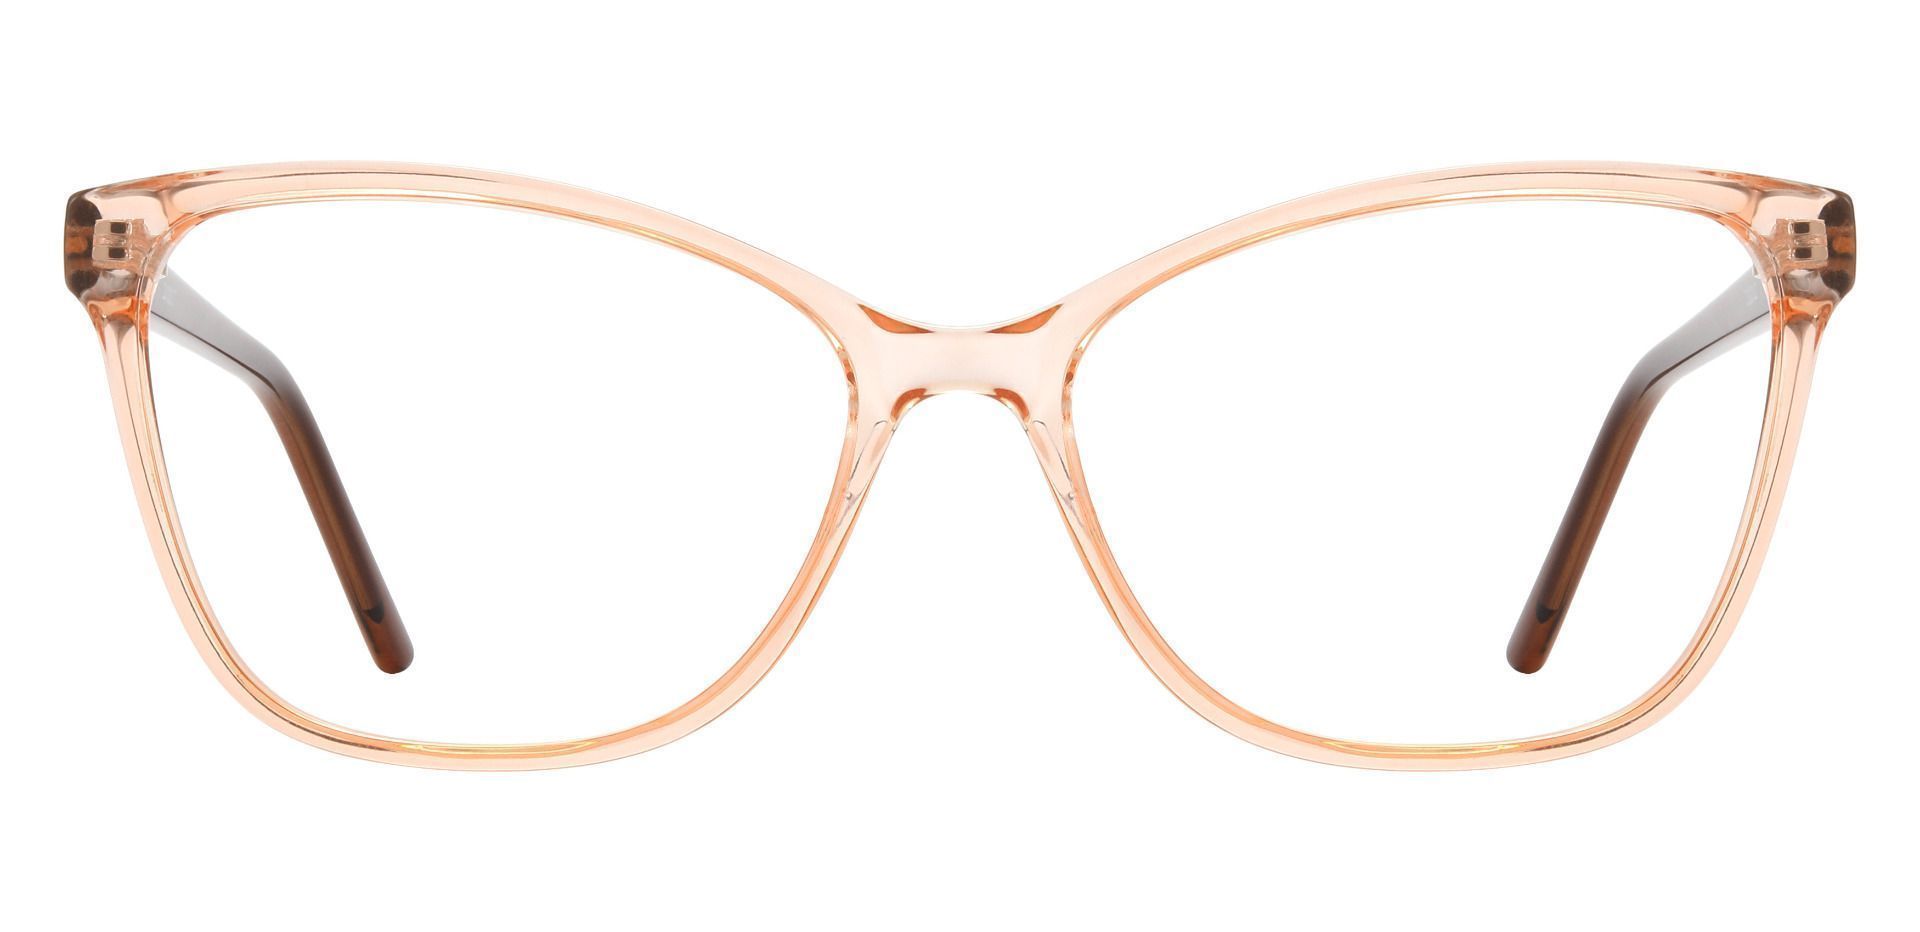 Giselle Cat Eye Prescription Glasses - Pink